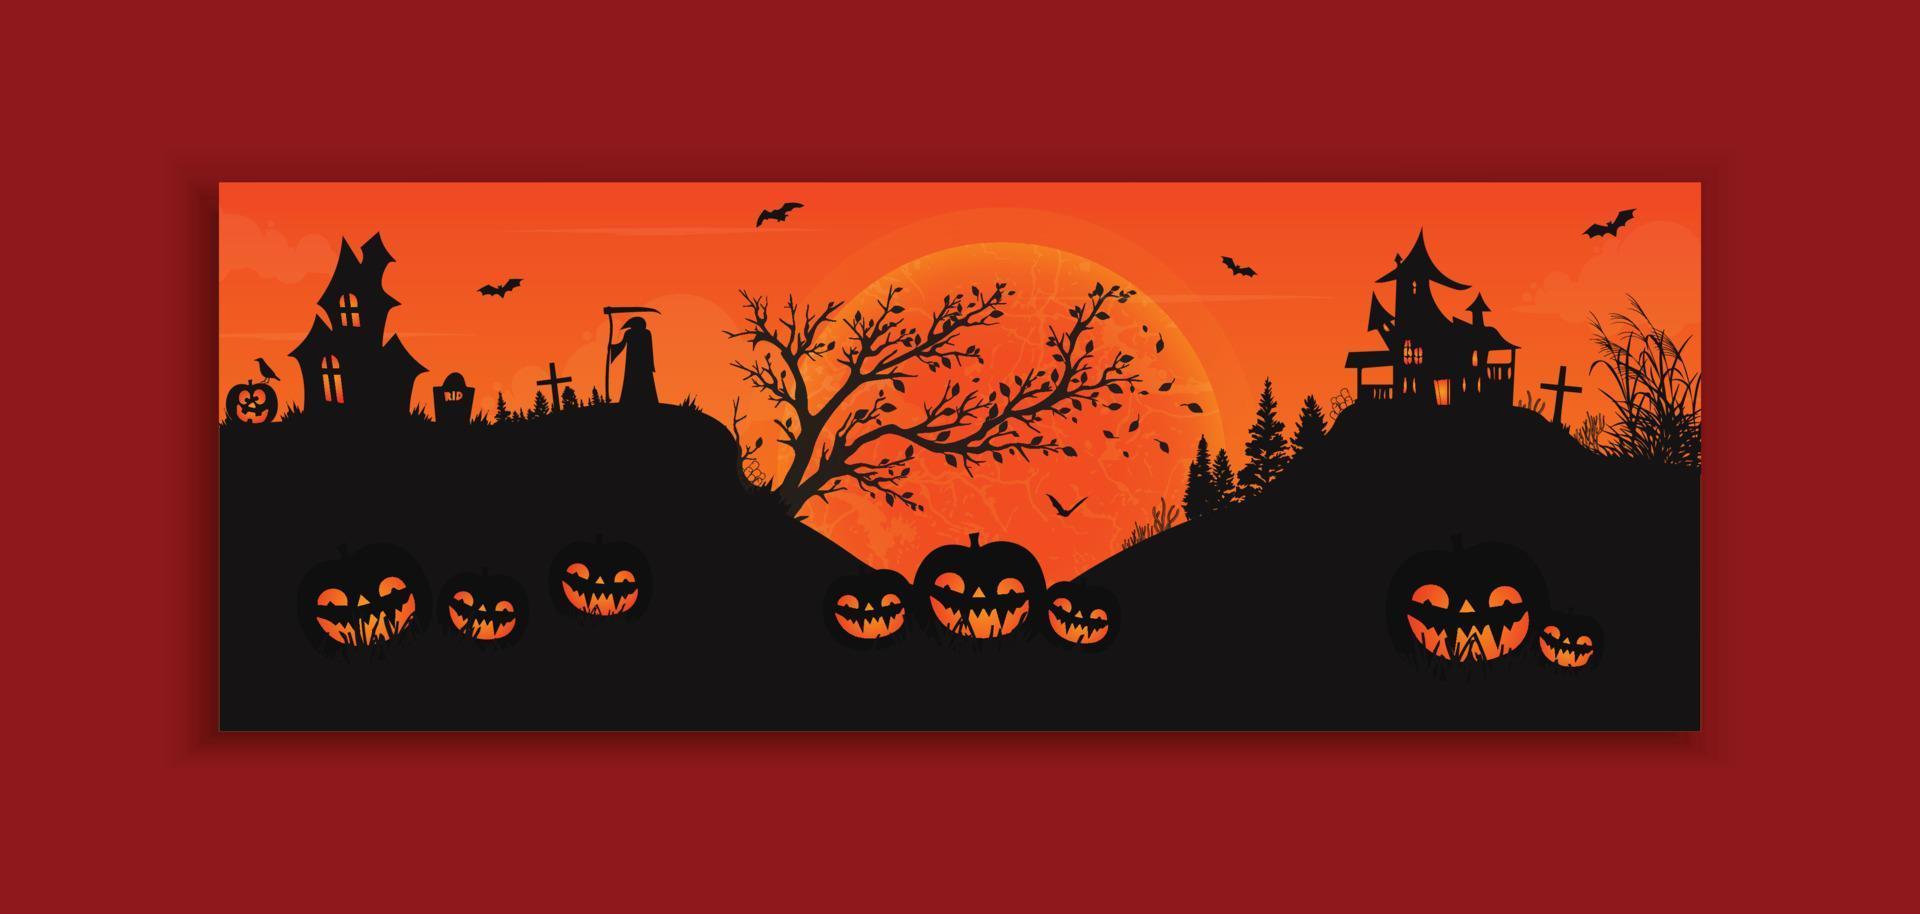 diseño de plantilla de banner web de fiesta de halloween vector